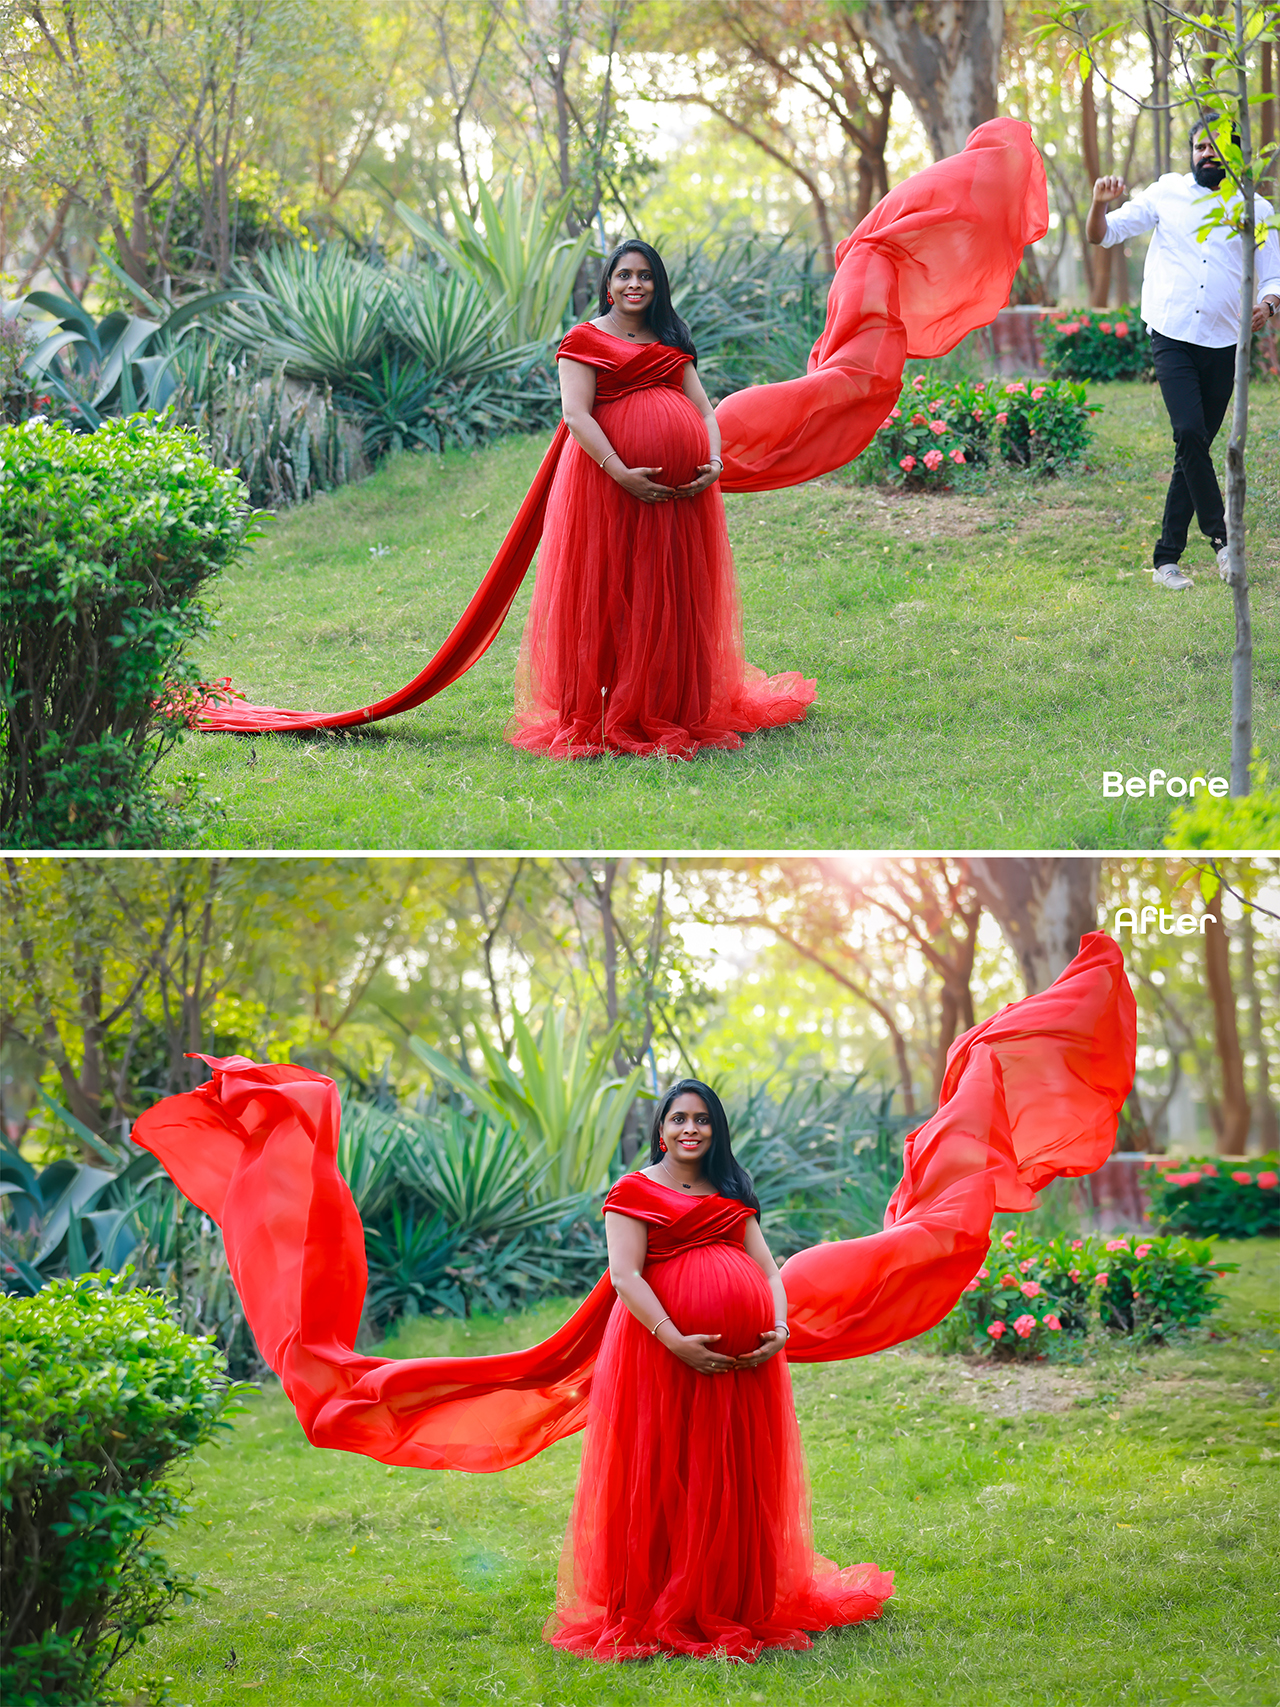 pose idea for maternity photo shoot | Maternity photography poses couple,  Maternity photography outdoors, Maternity photography poses pregnancy pics